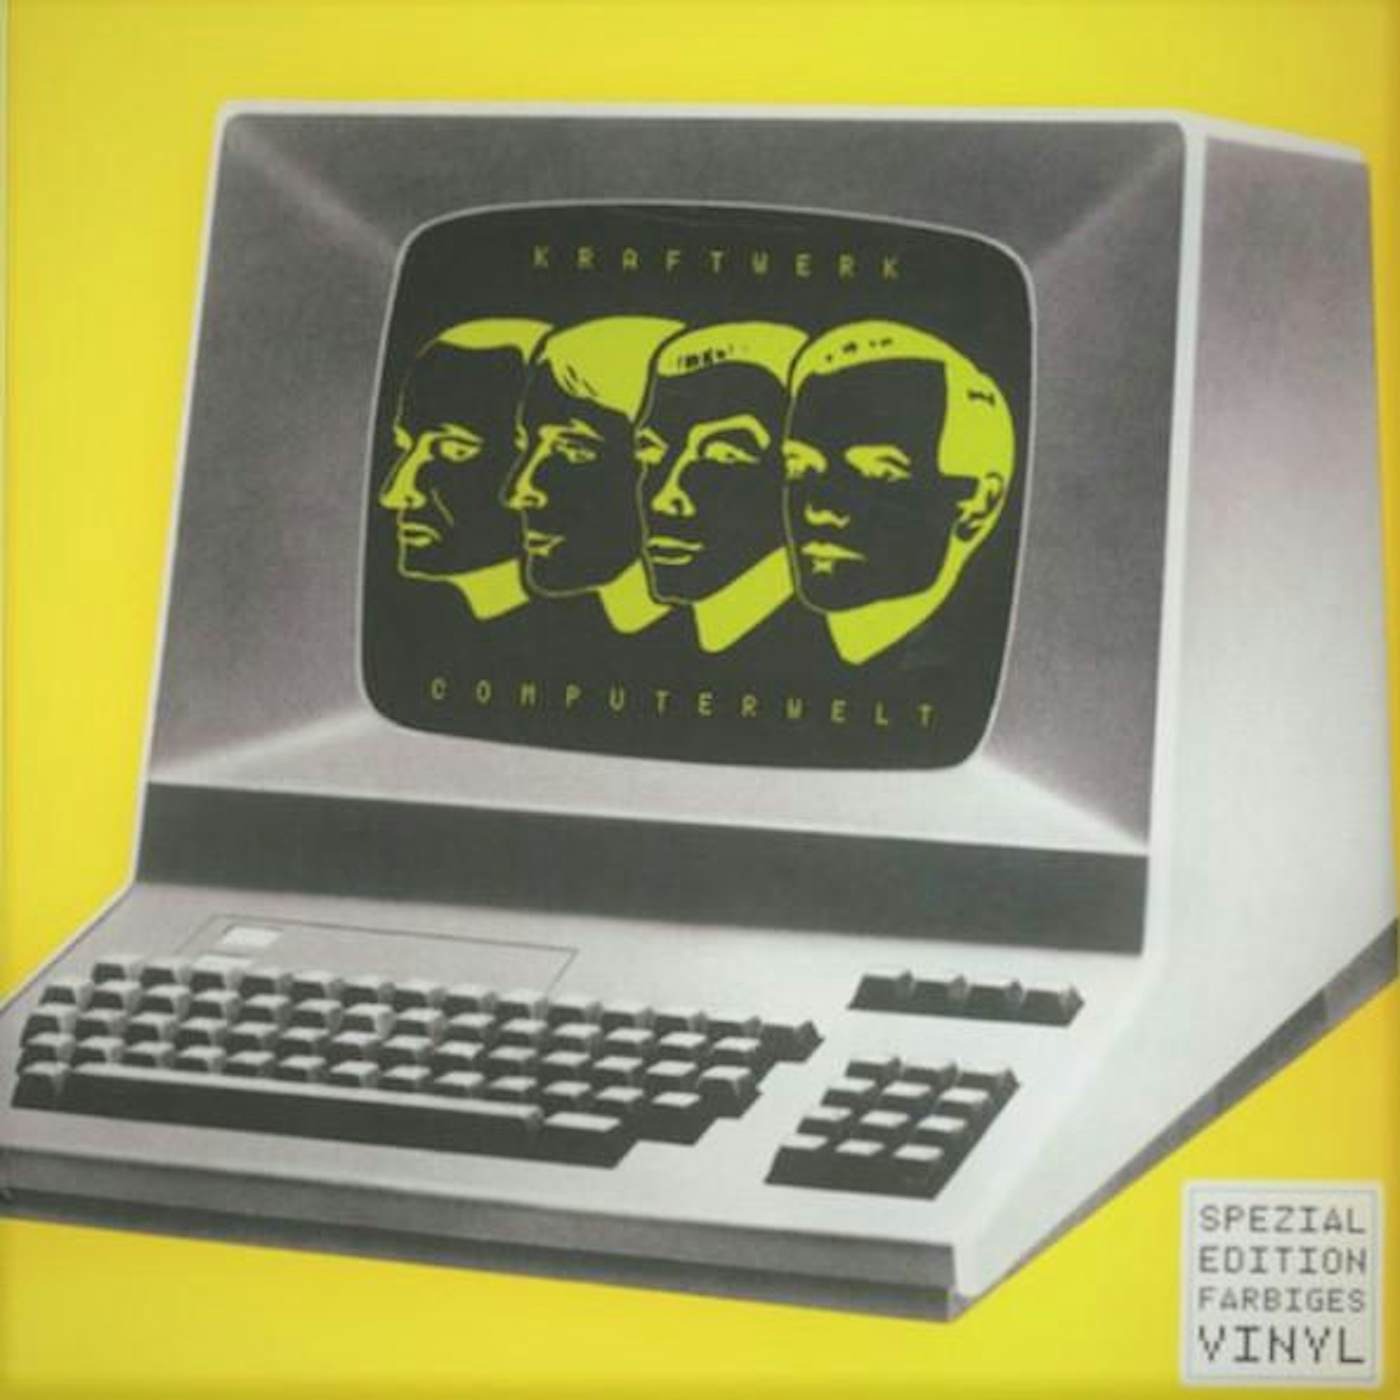 Unknown COMPUTERWELT GERMAN VERSION Vinyl Record